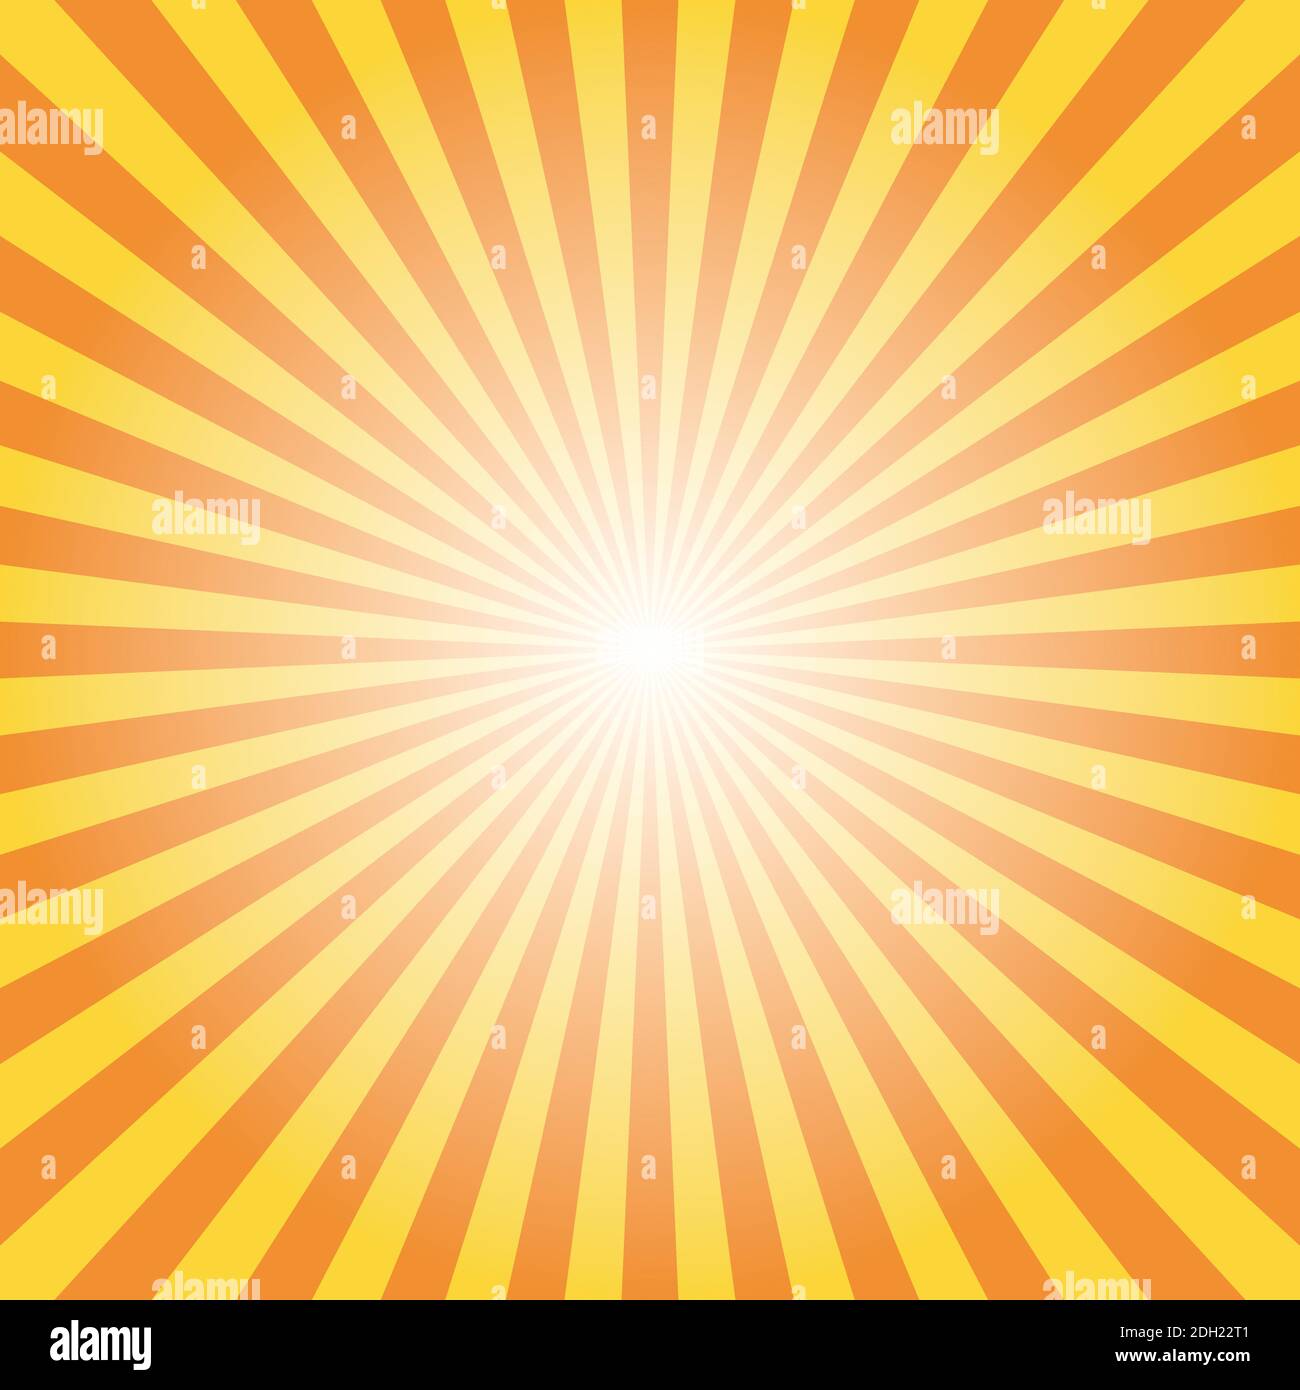 Astratto giallo Sunburst backgound. Raggi vettoriali in disposizione radiale. Illustrazione Vettoriale